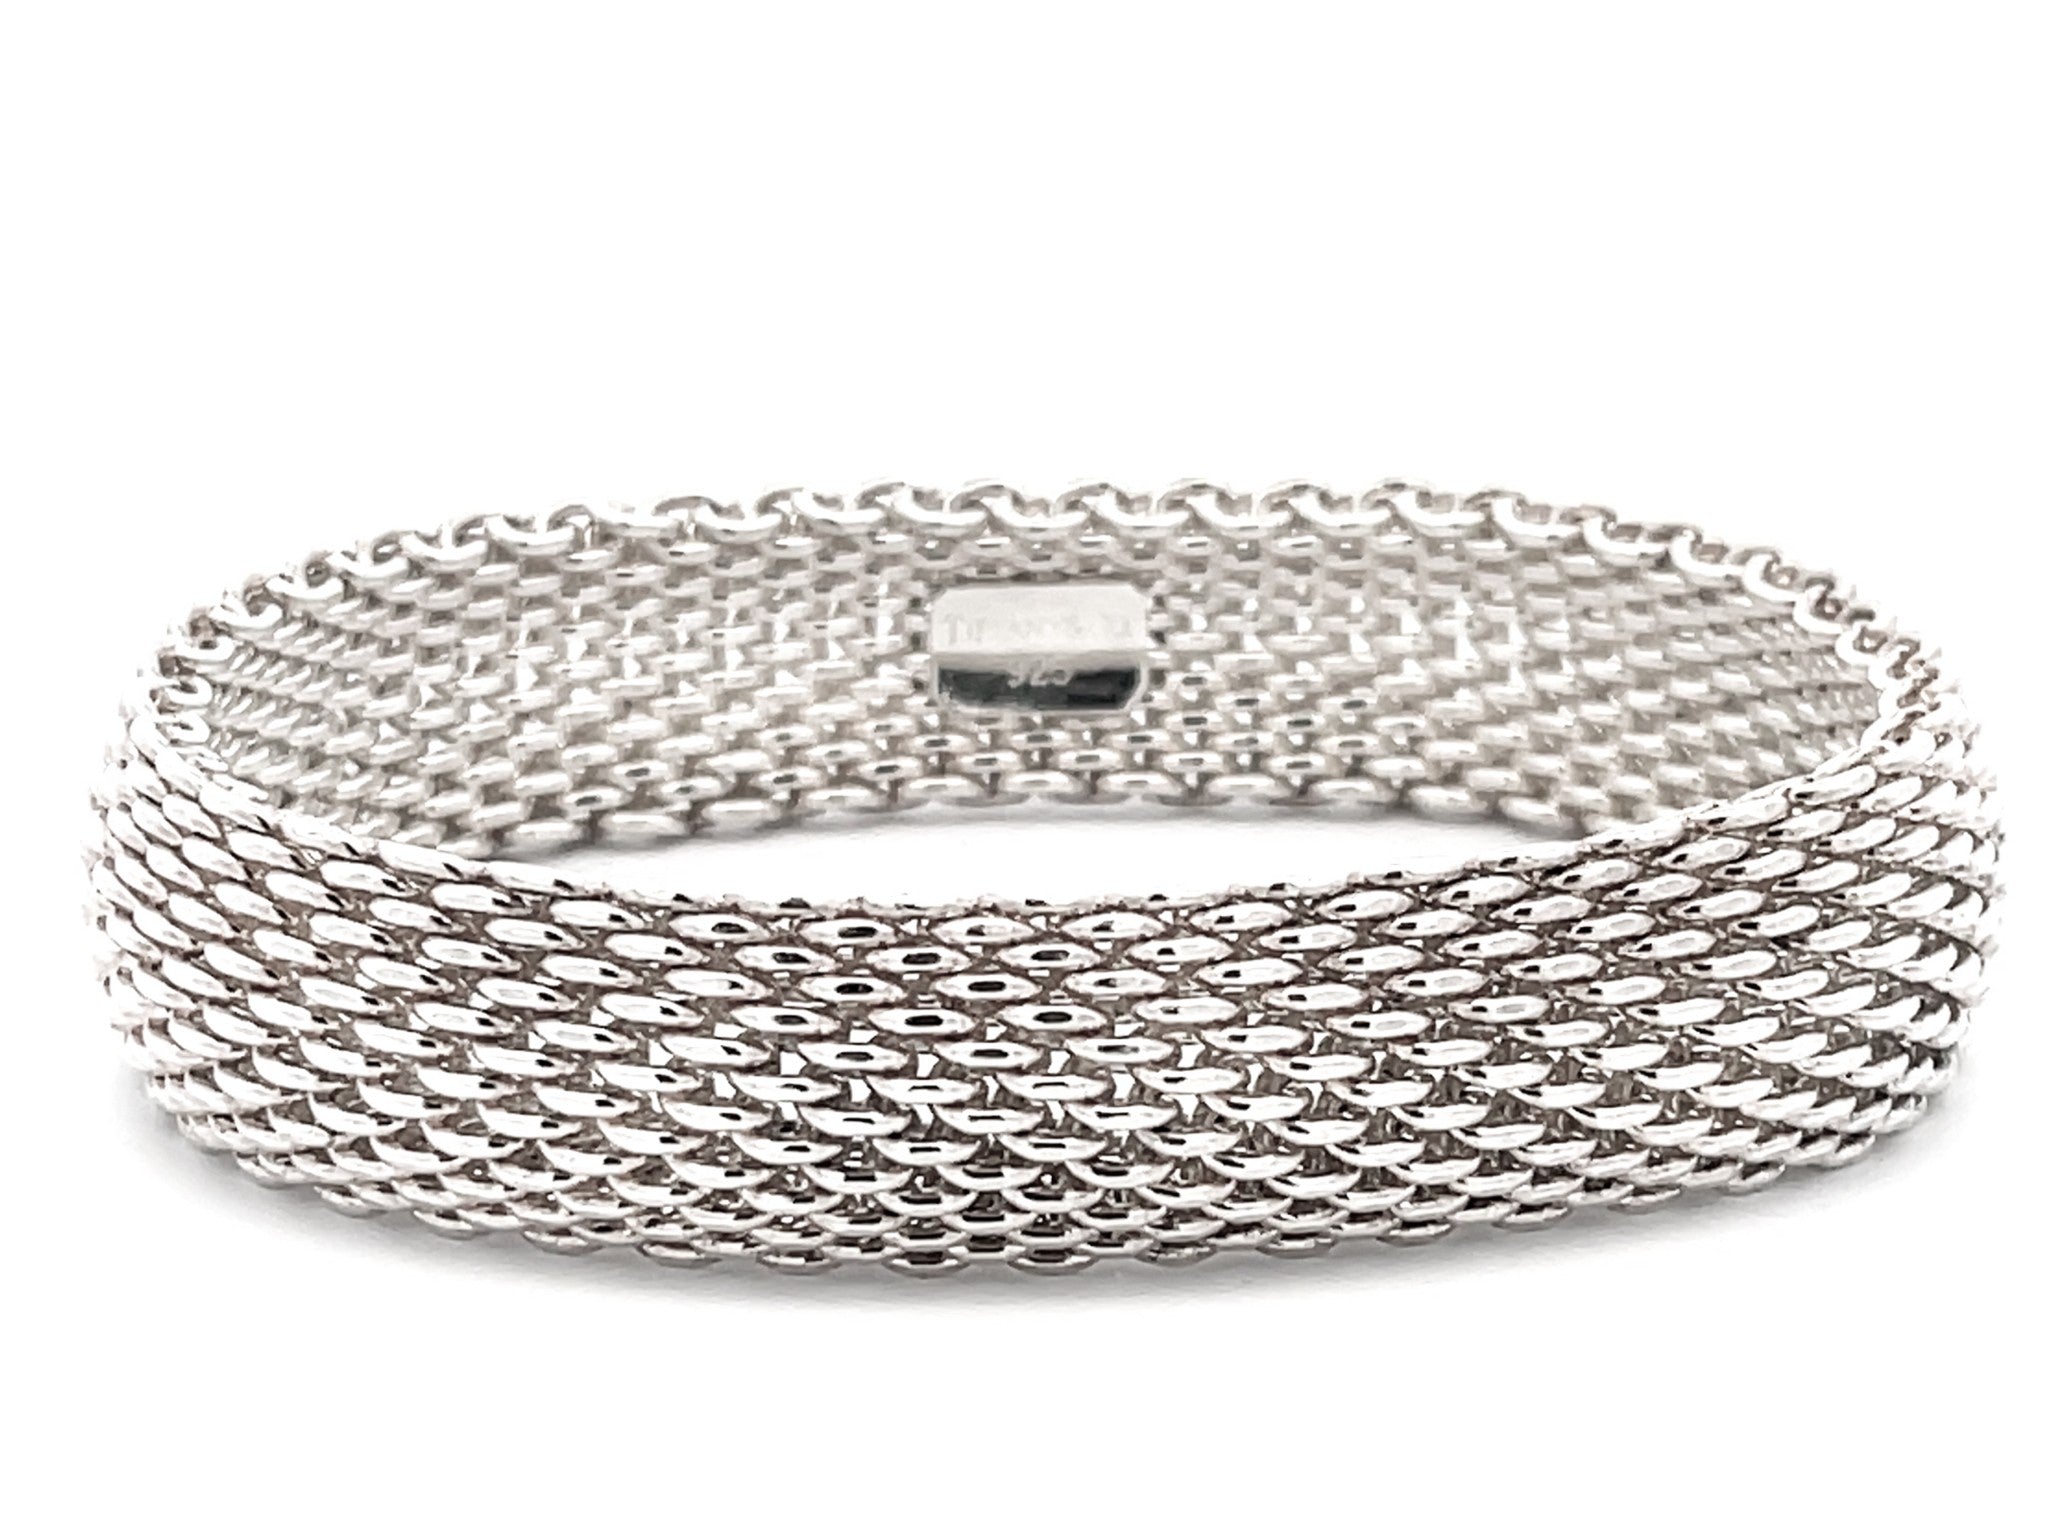 Tiffany & Co. Summerset Cuff Bracelet in Sterling Silver